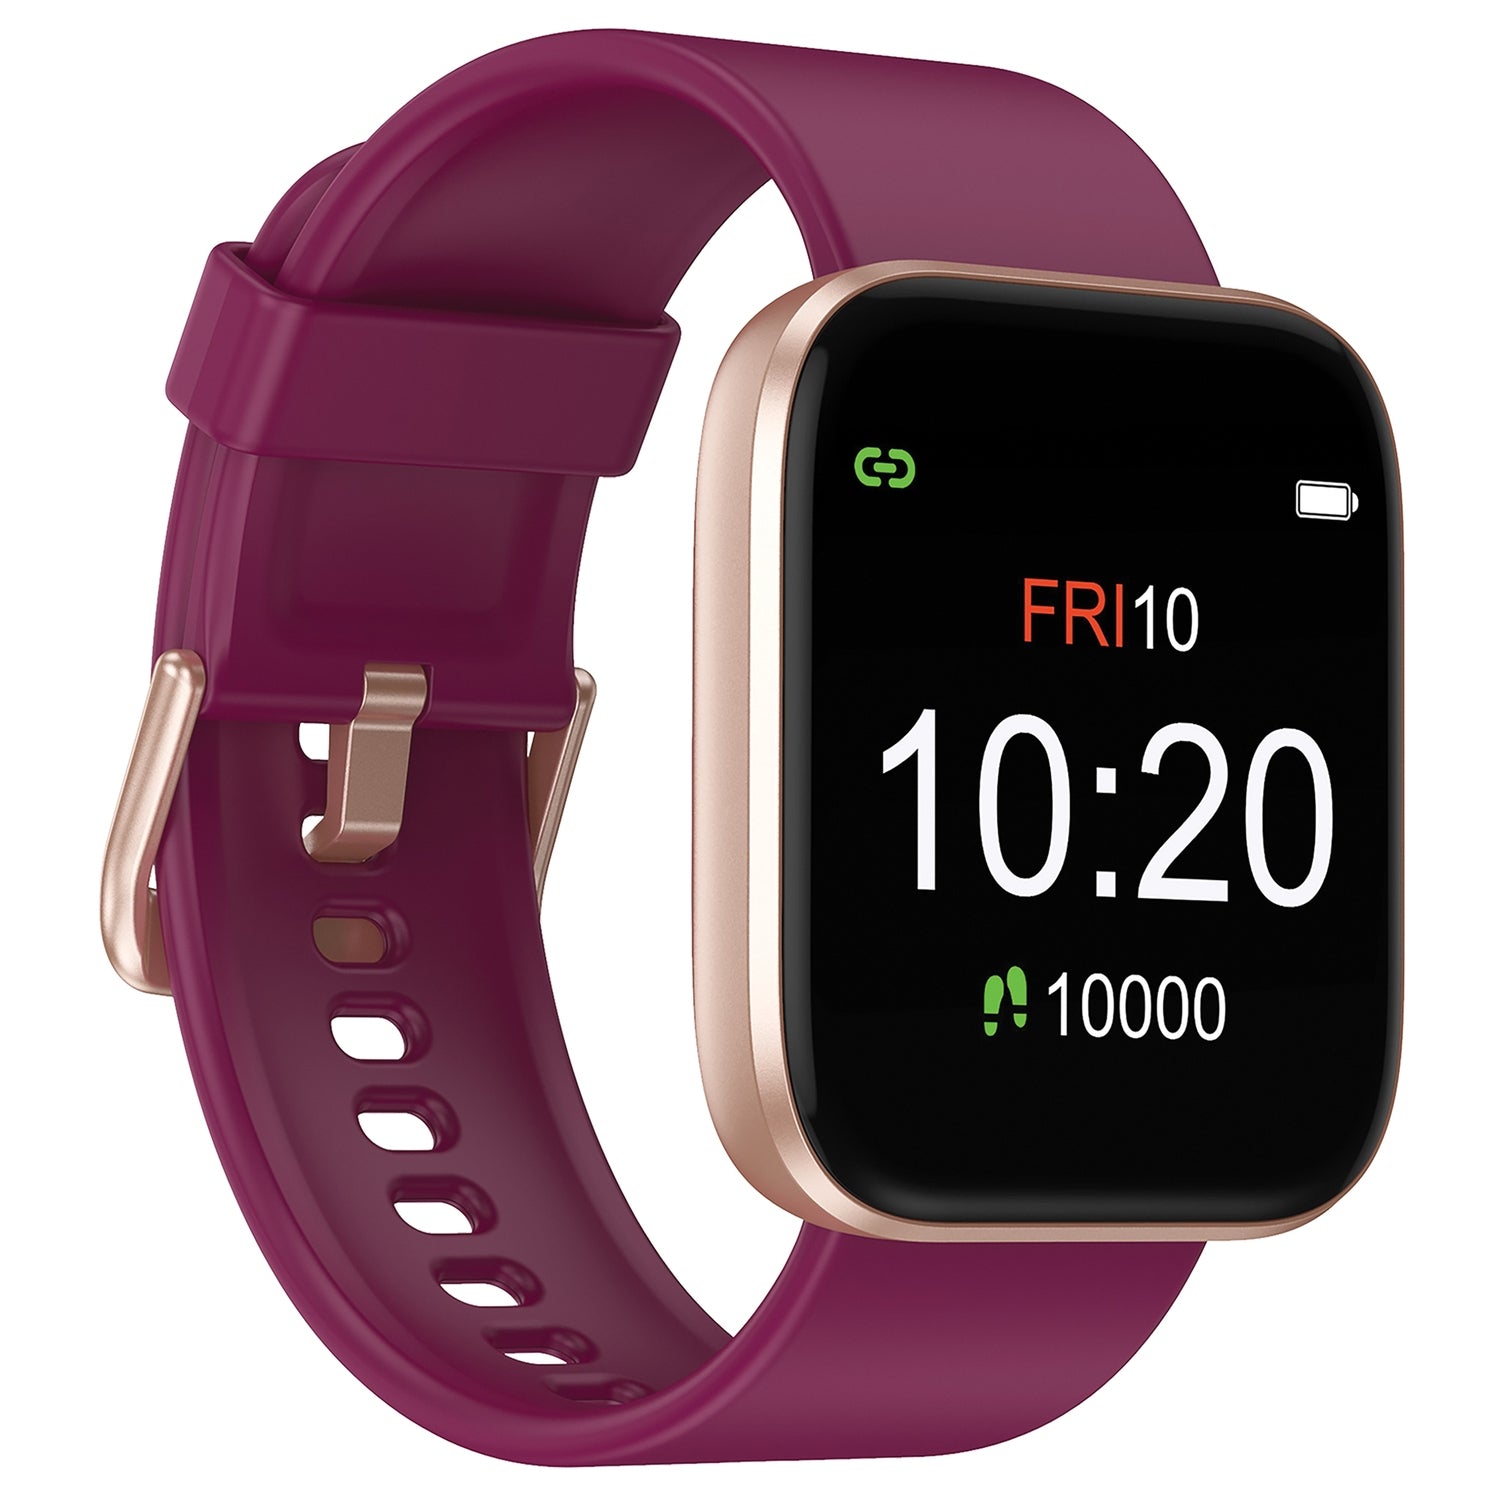 Letsfit 843785124963 IW1 Bluetooth Smart Watch (Purple/Gold)